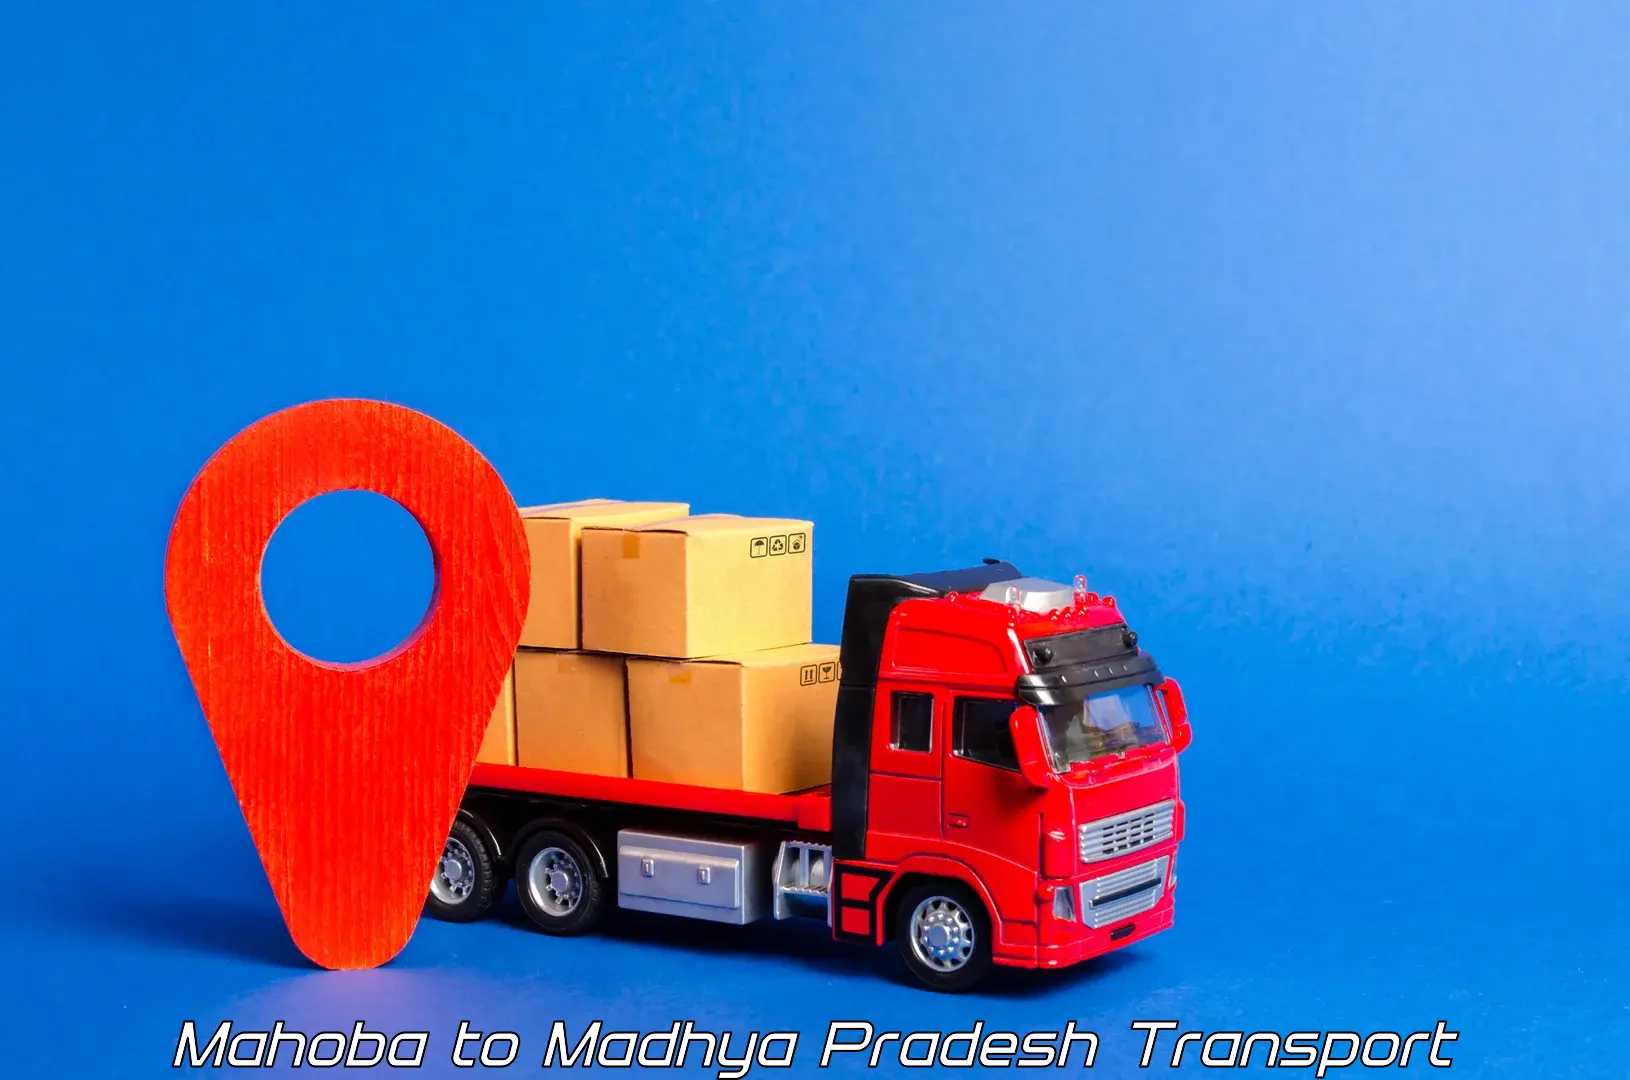 Nearby transport service Mahoba to Madhya Pradesh